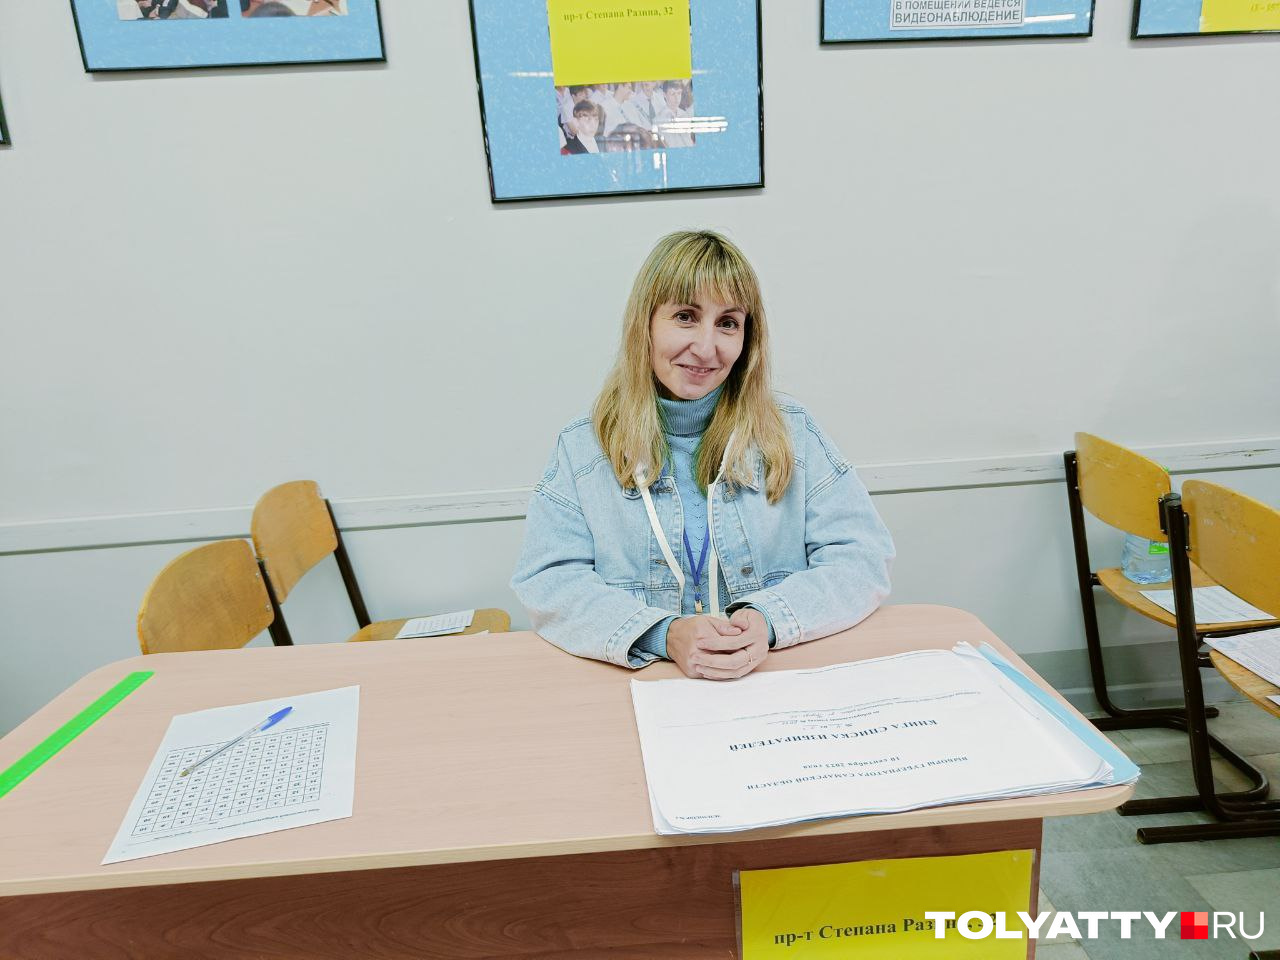 Ирина Никульшина — член избирательной комиссии